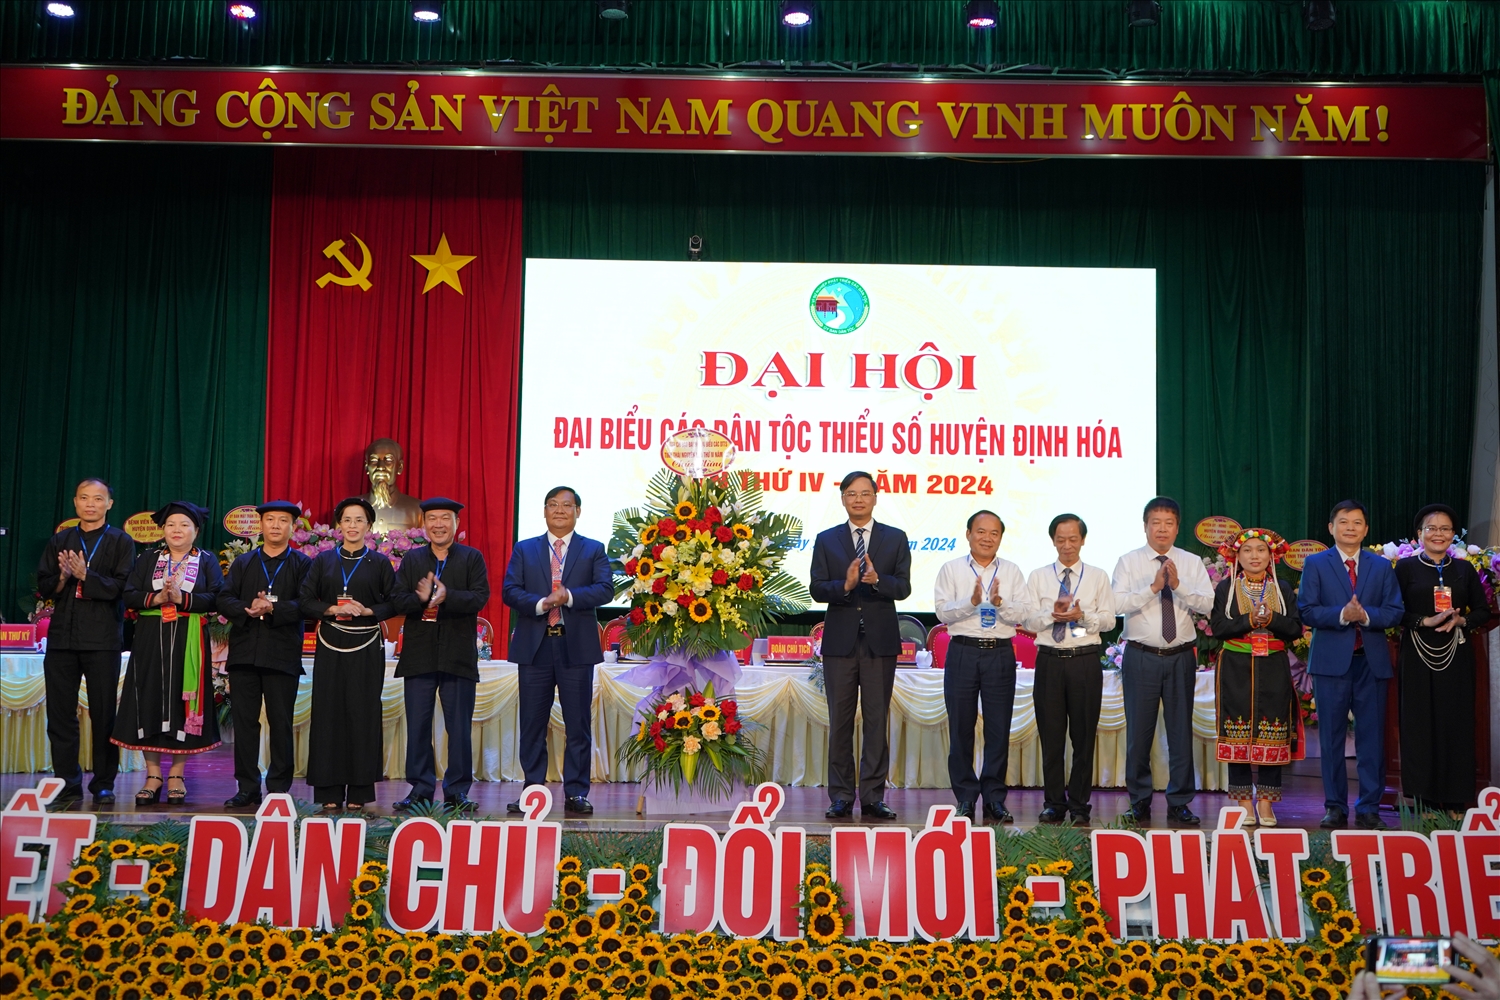 Đại hội là dịp đánh giá, ghi nhận những kết quả đạt được trong lĩnh vực công tác dân tộc, chính sách dân tộc trên địa bàn huyện Định Hóa giai đoạn 2019 -2024. 